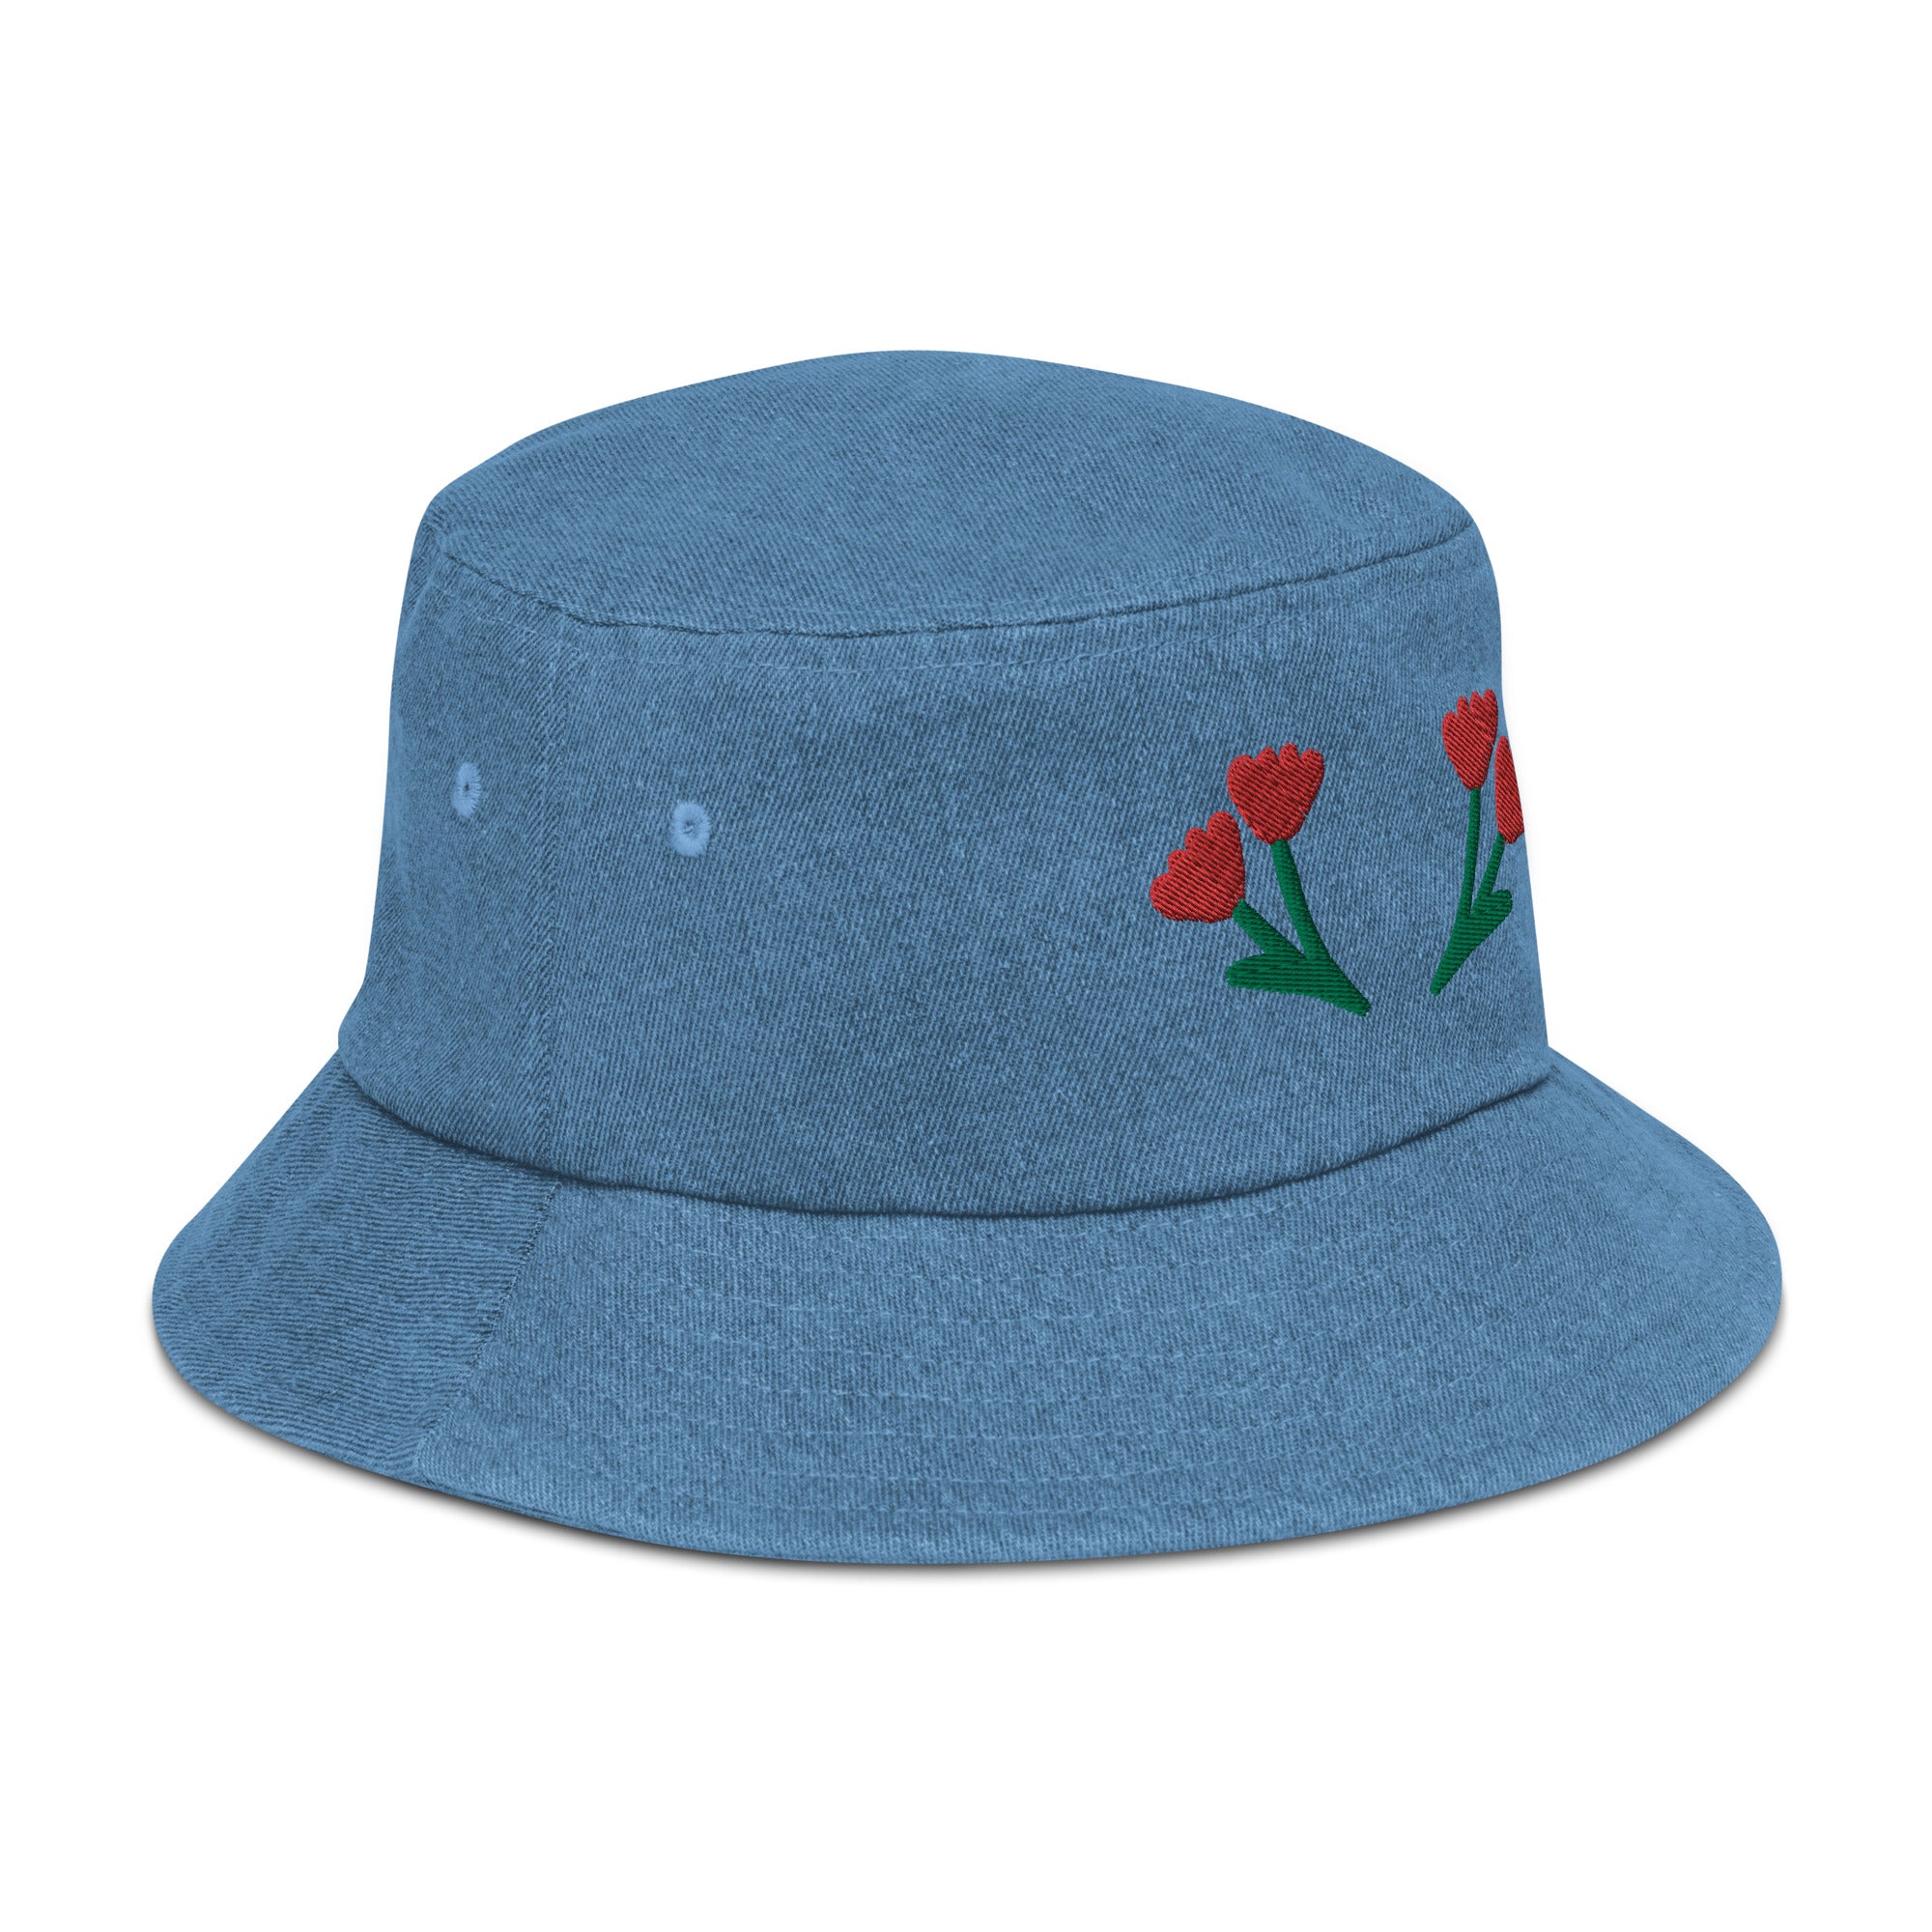 Happy Together Flower Denim Bucket Hat